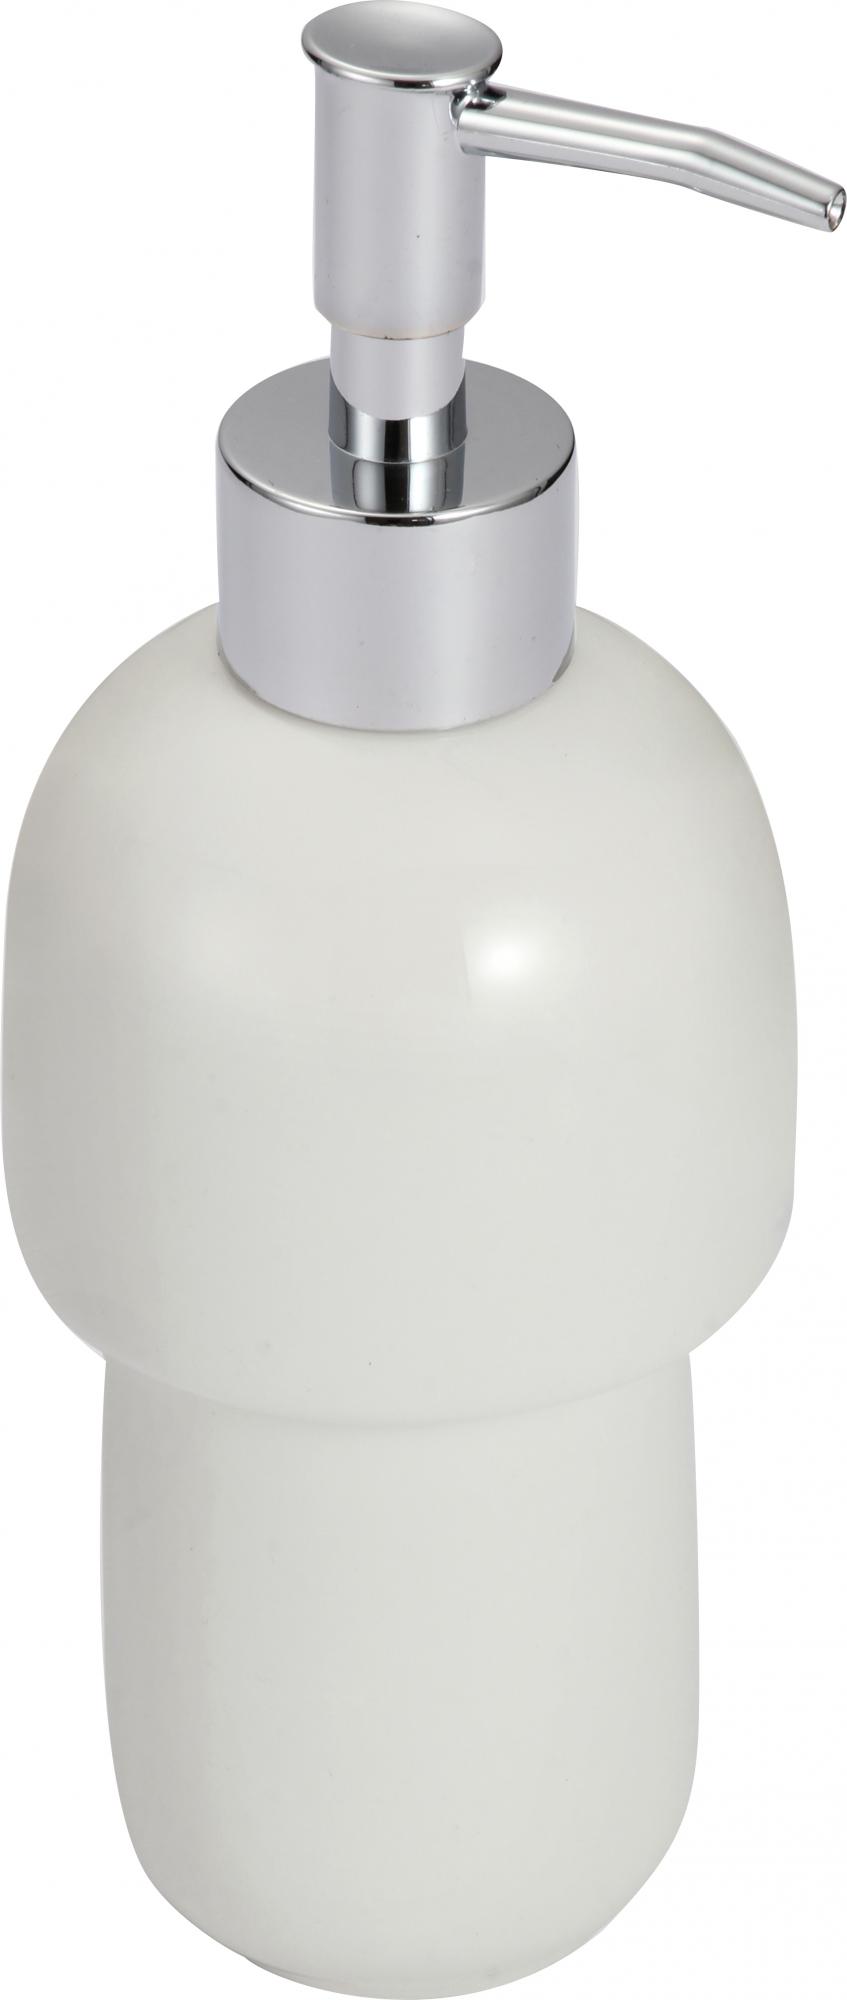 Дозатор Savol для жидкого мыла керамический (S-TCZYQ) - фото 2